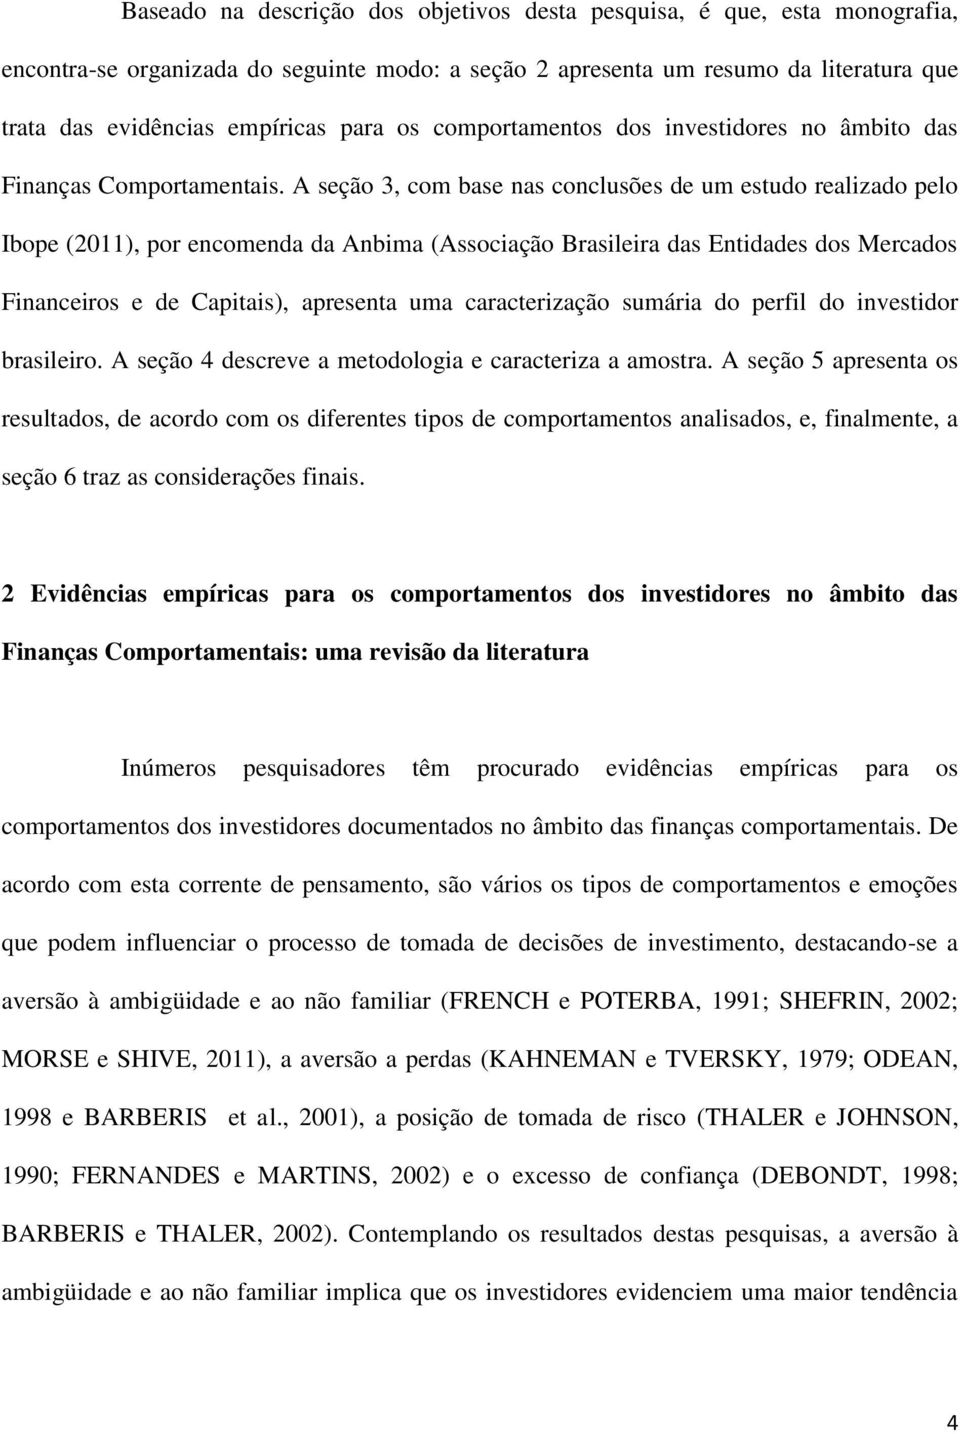 A seção 3, com base nas conclusões de um estudo realizado pelo Ibope (2011), por encomenda da Anbima (Associação Brasileira das Entidades dos Mercados Financeiros e de Capitais), apresenta uma